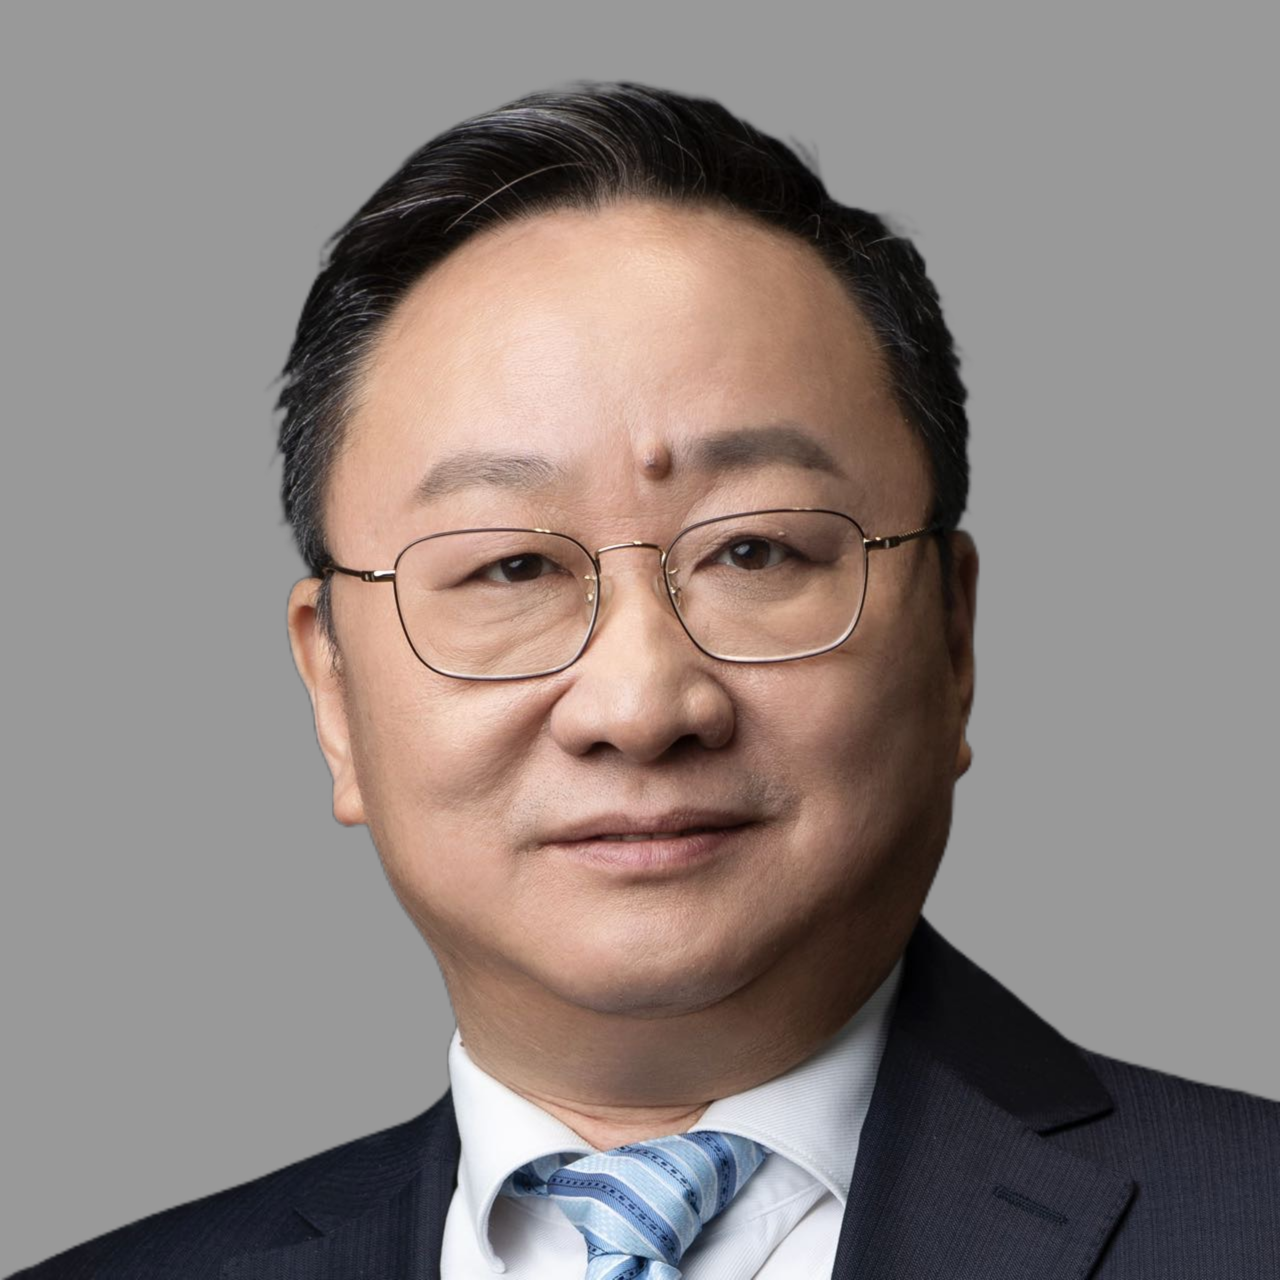 Mr. Zhai Feng